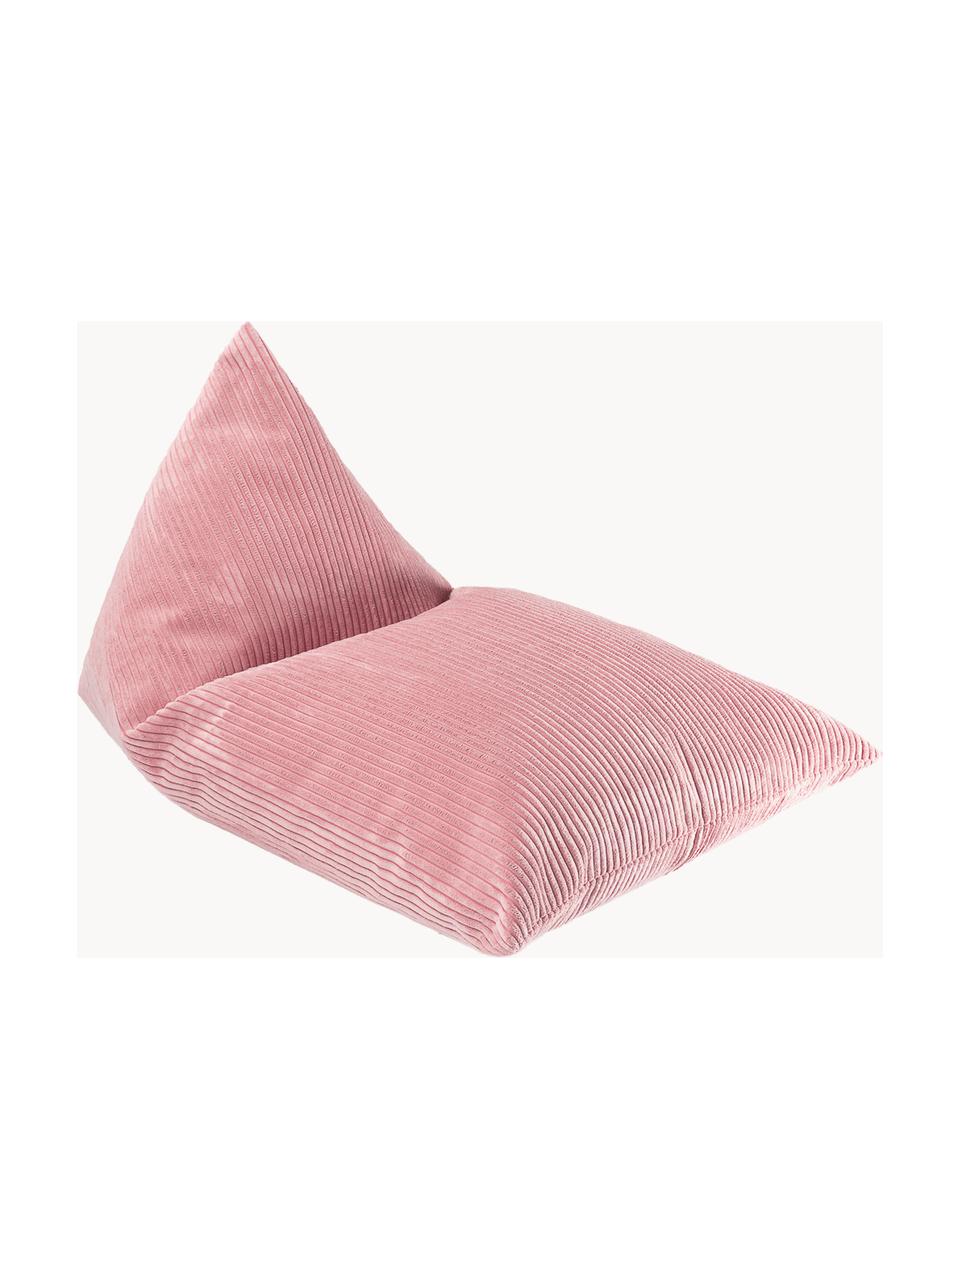 Puf saco infantil de pana Sugar, Funda: pana (100% poliéster) pro, Pana rosa palo, An 70 x L 110